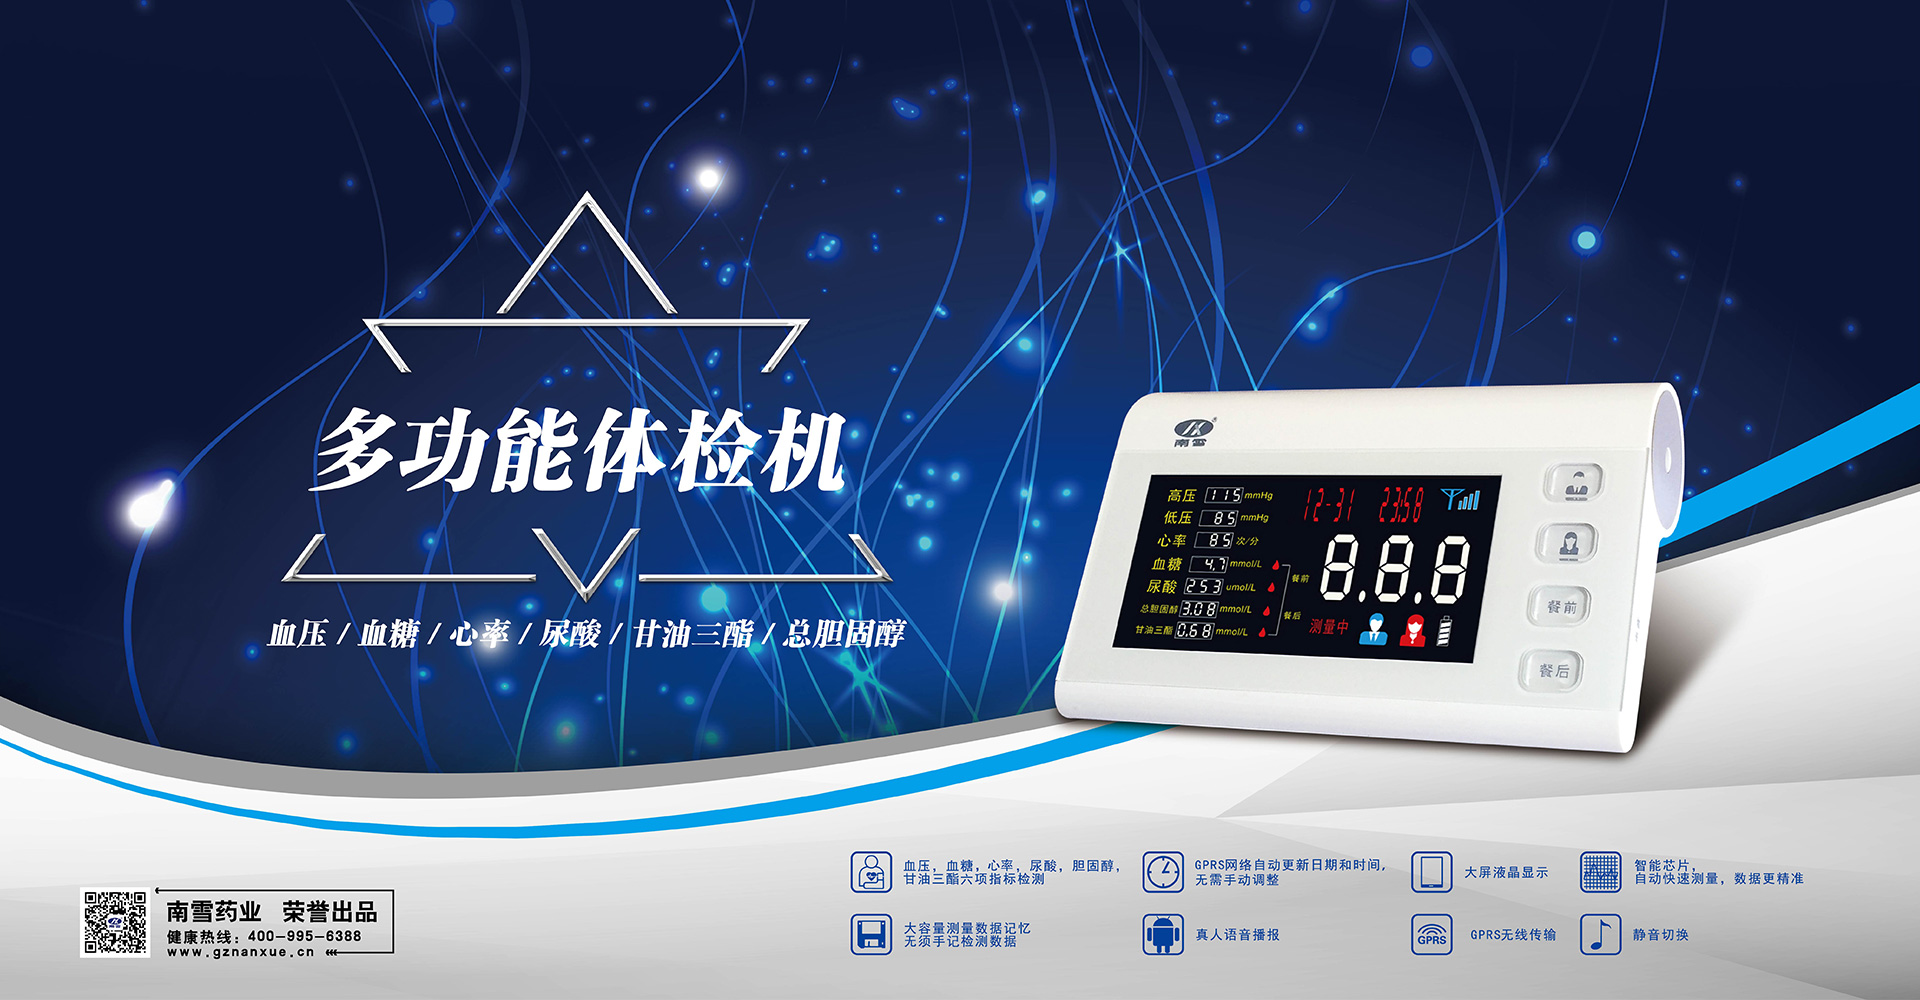 关于当前产品1998彩票官方平台·(中国)官方网站的成功案例等相关图片